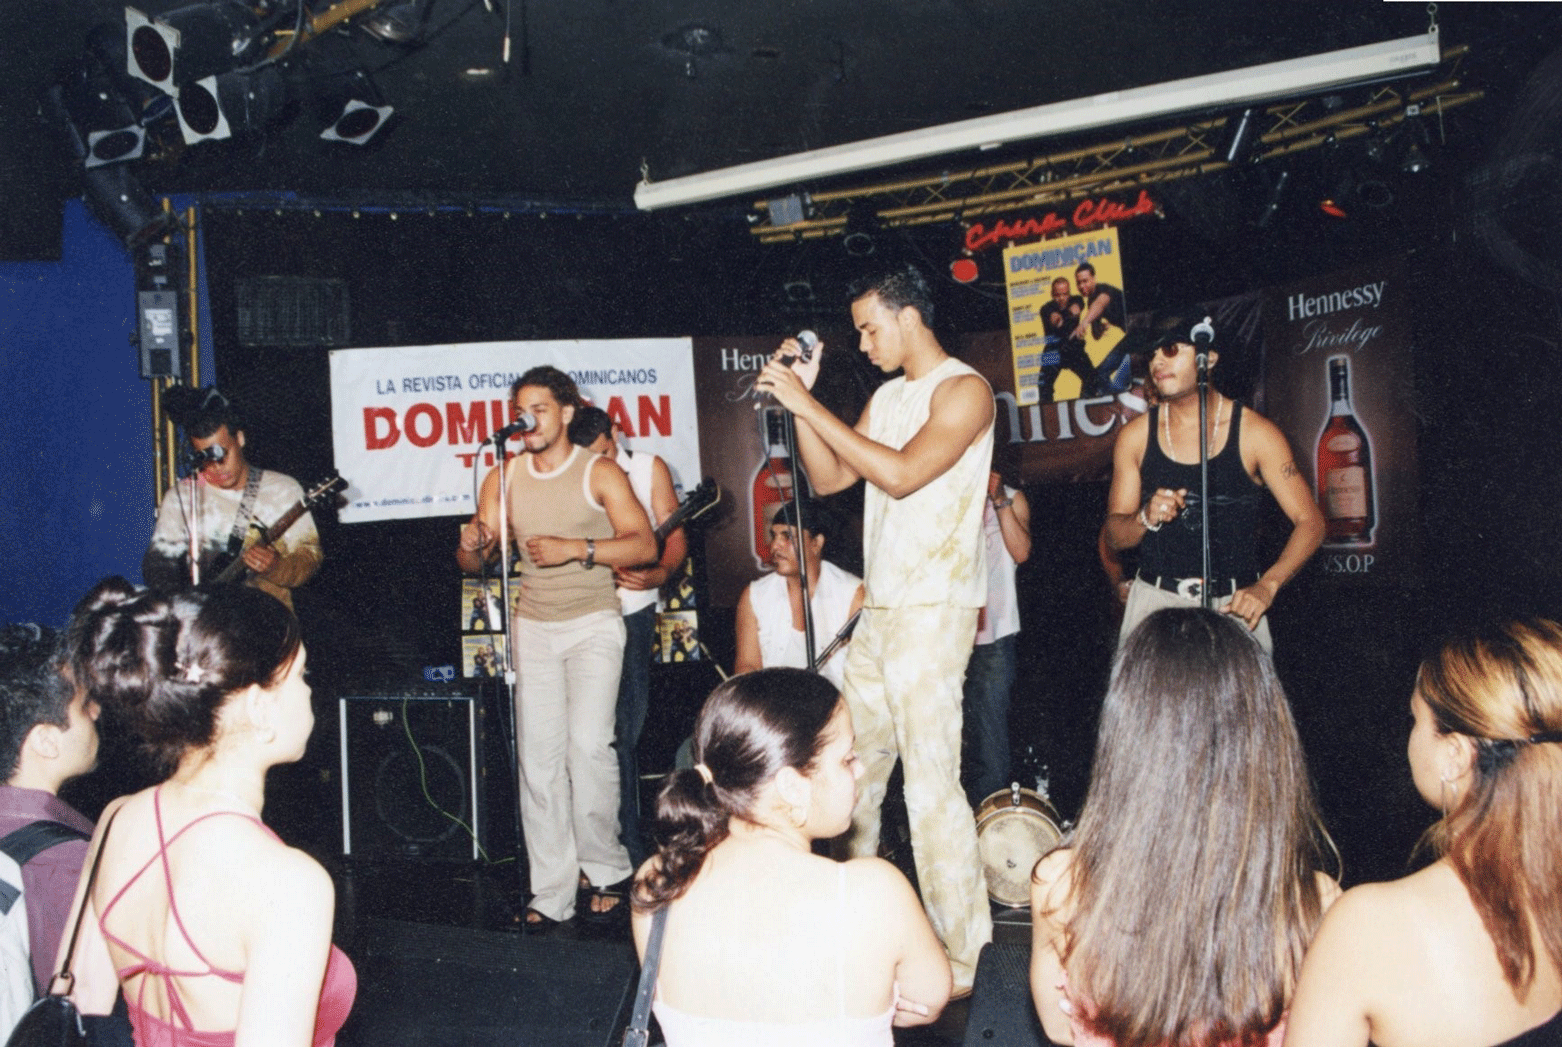 Aventura performing at the China Club, 2002